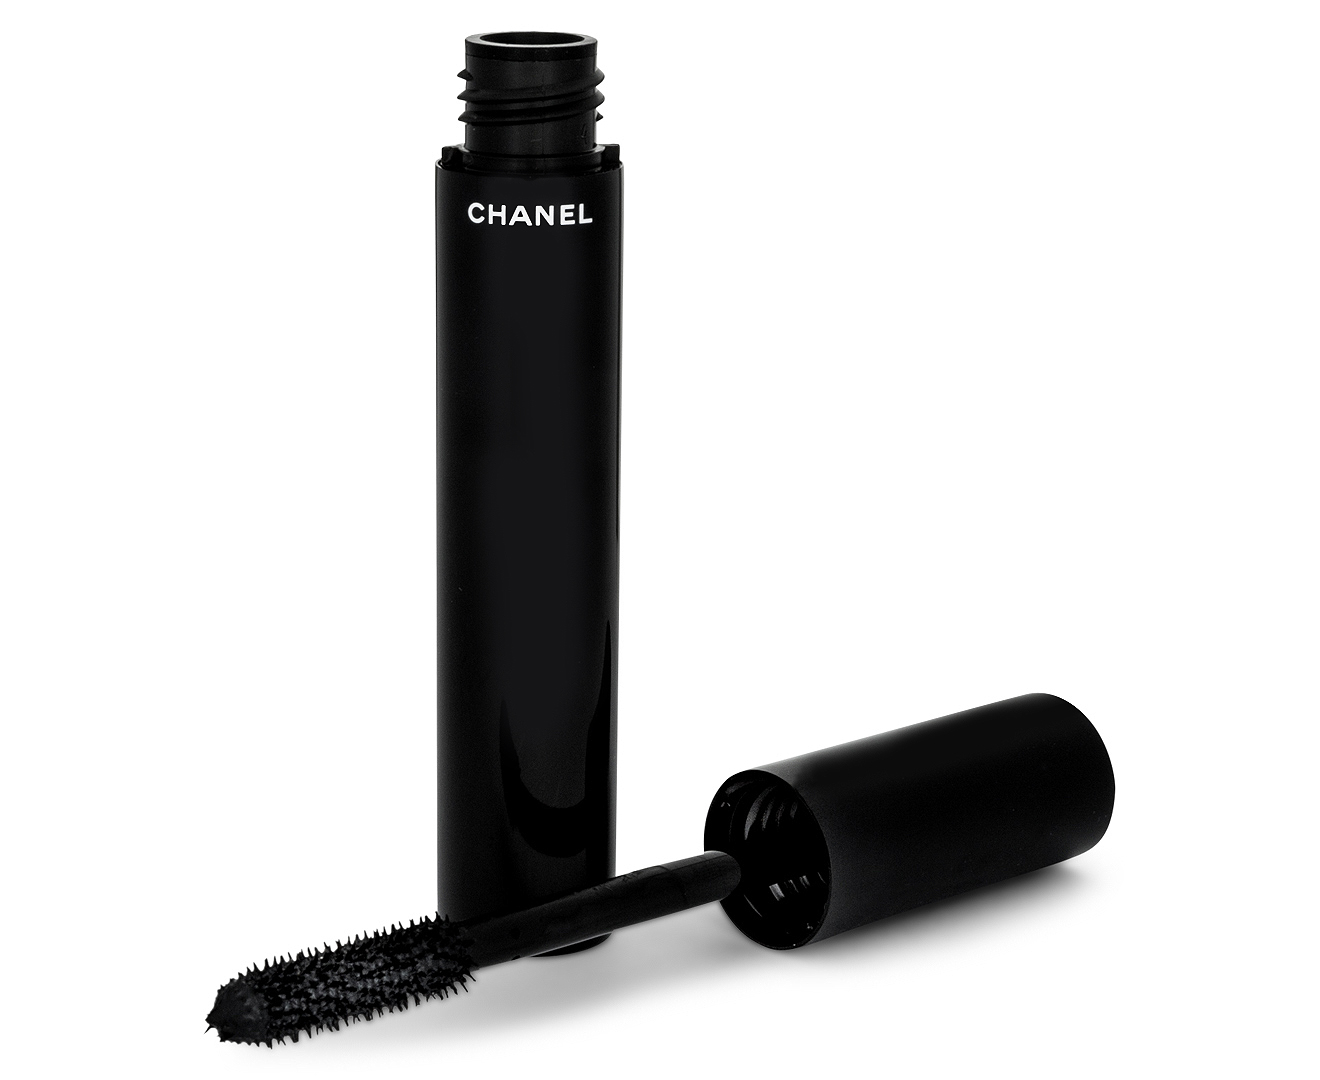 Chanel Le Volume De Chanel Mascara - #10 Noir 6g/0.21oz